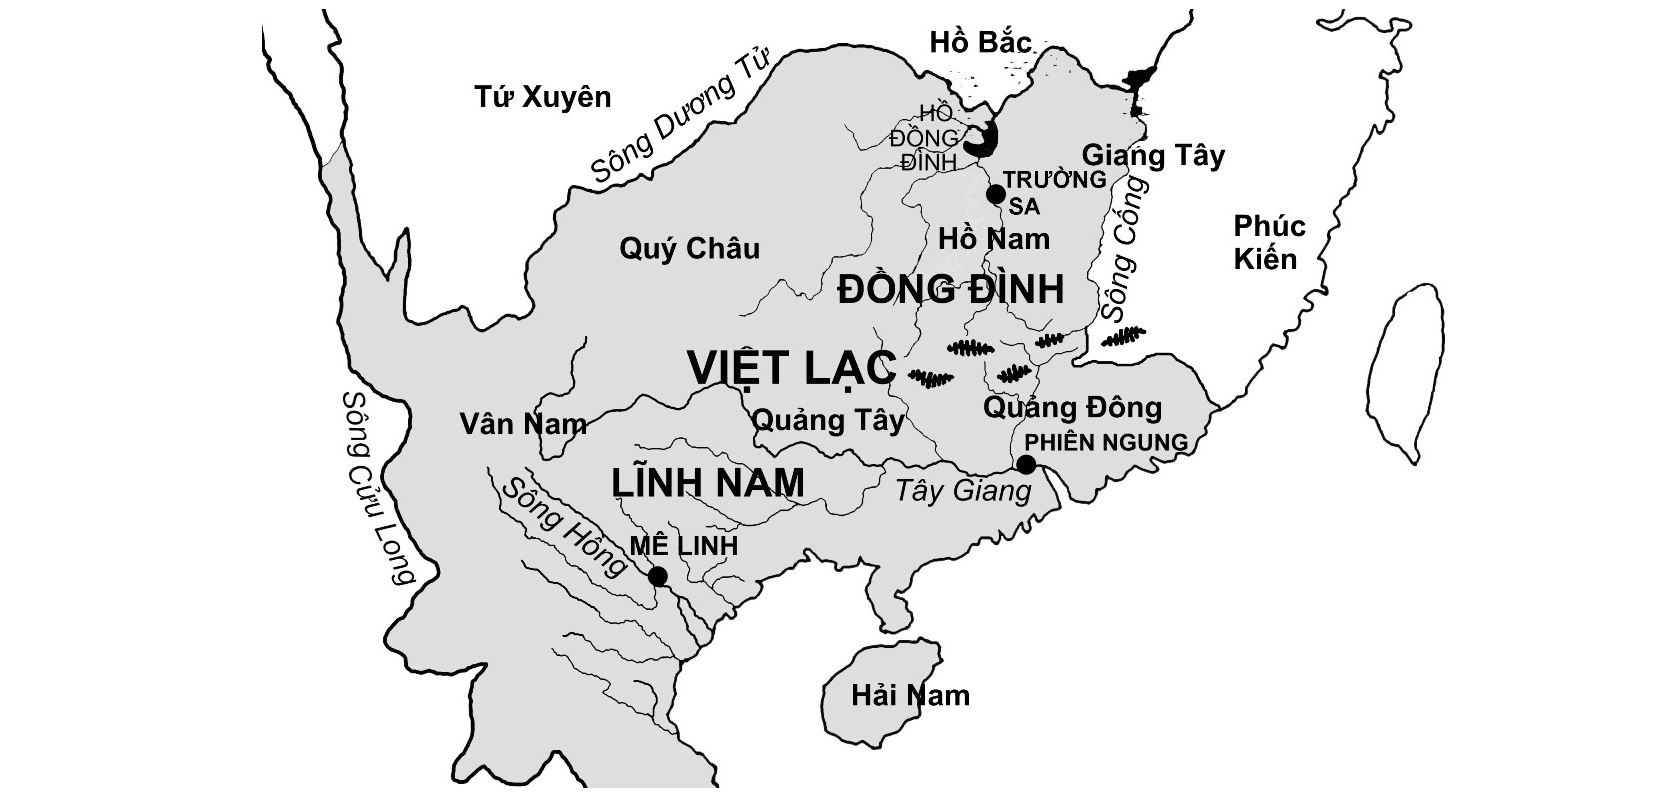 Cuộc nổi dậy của chị em họ Trưng và sự biệt lập văn hoá Việt – Hán